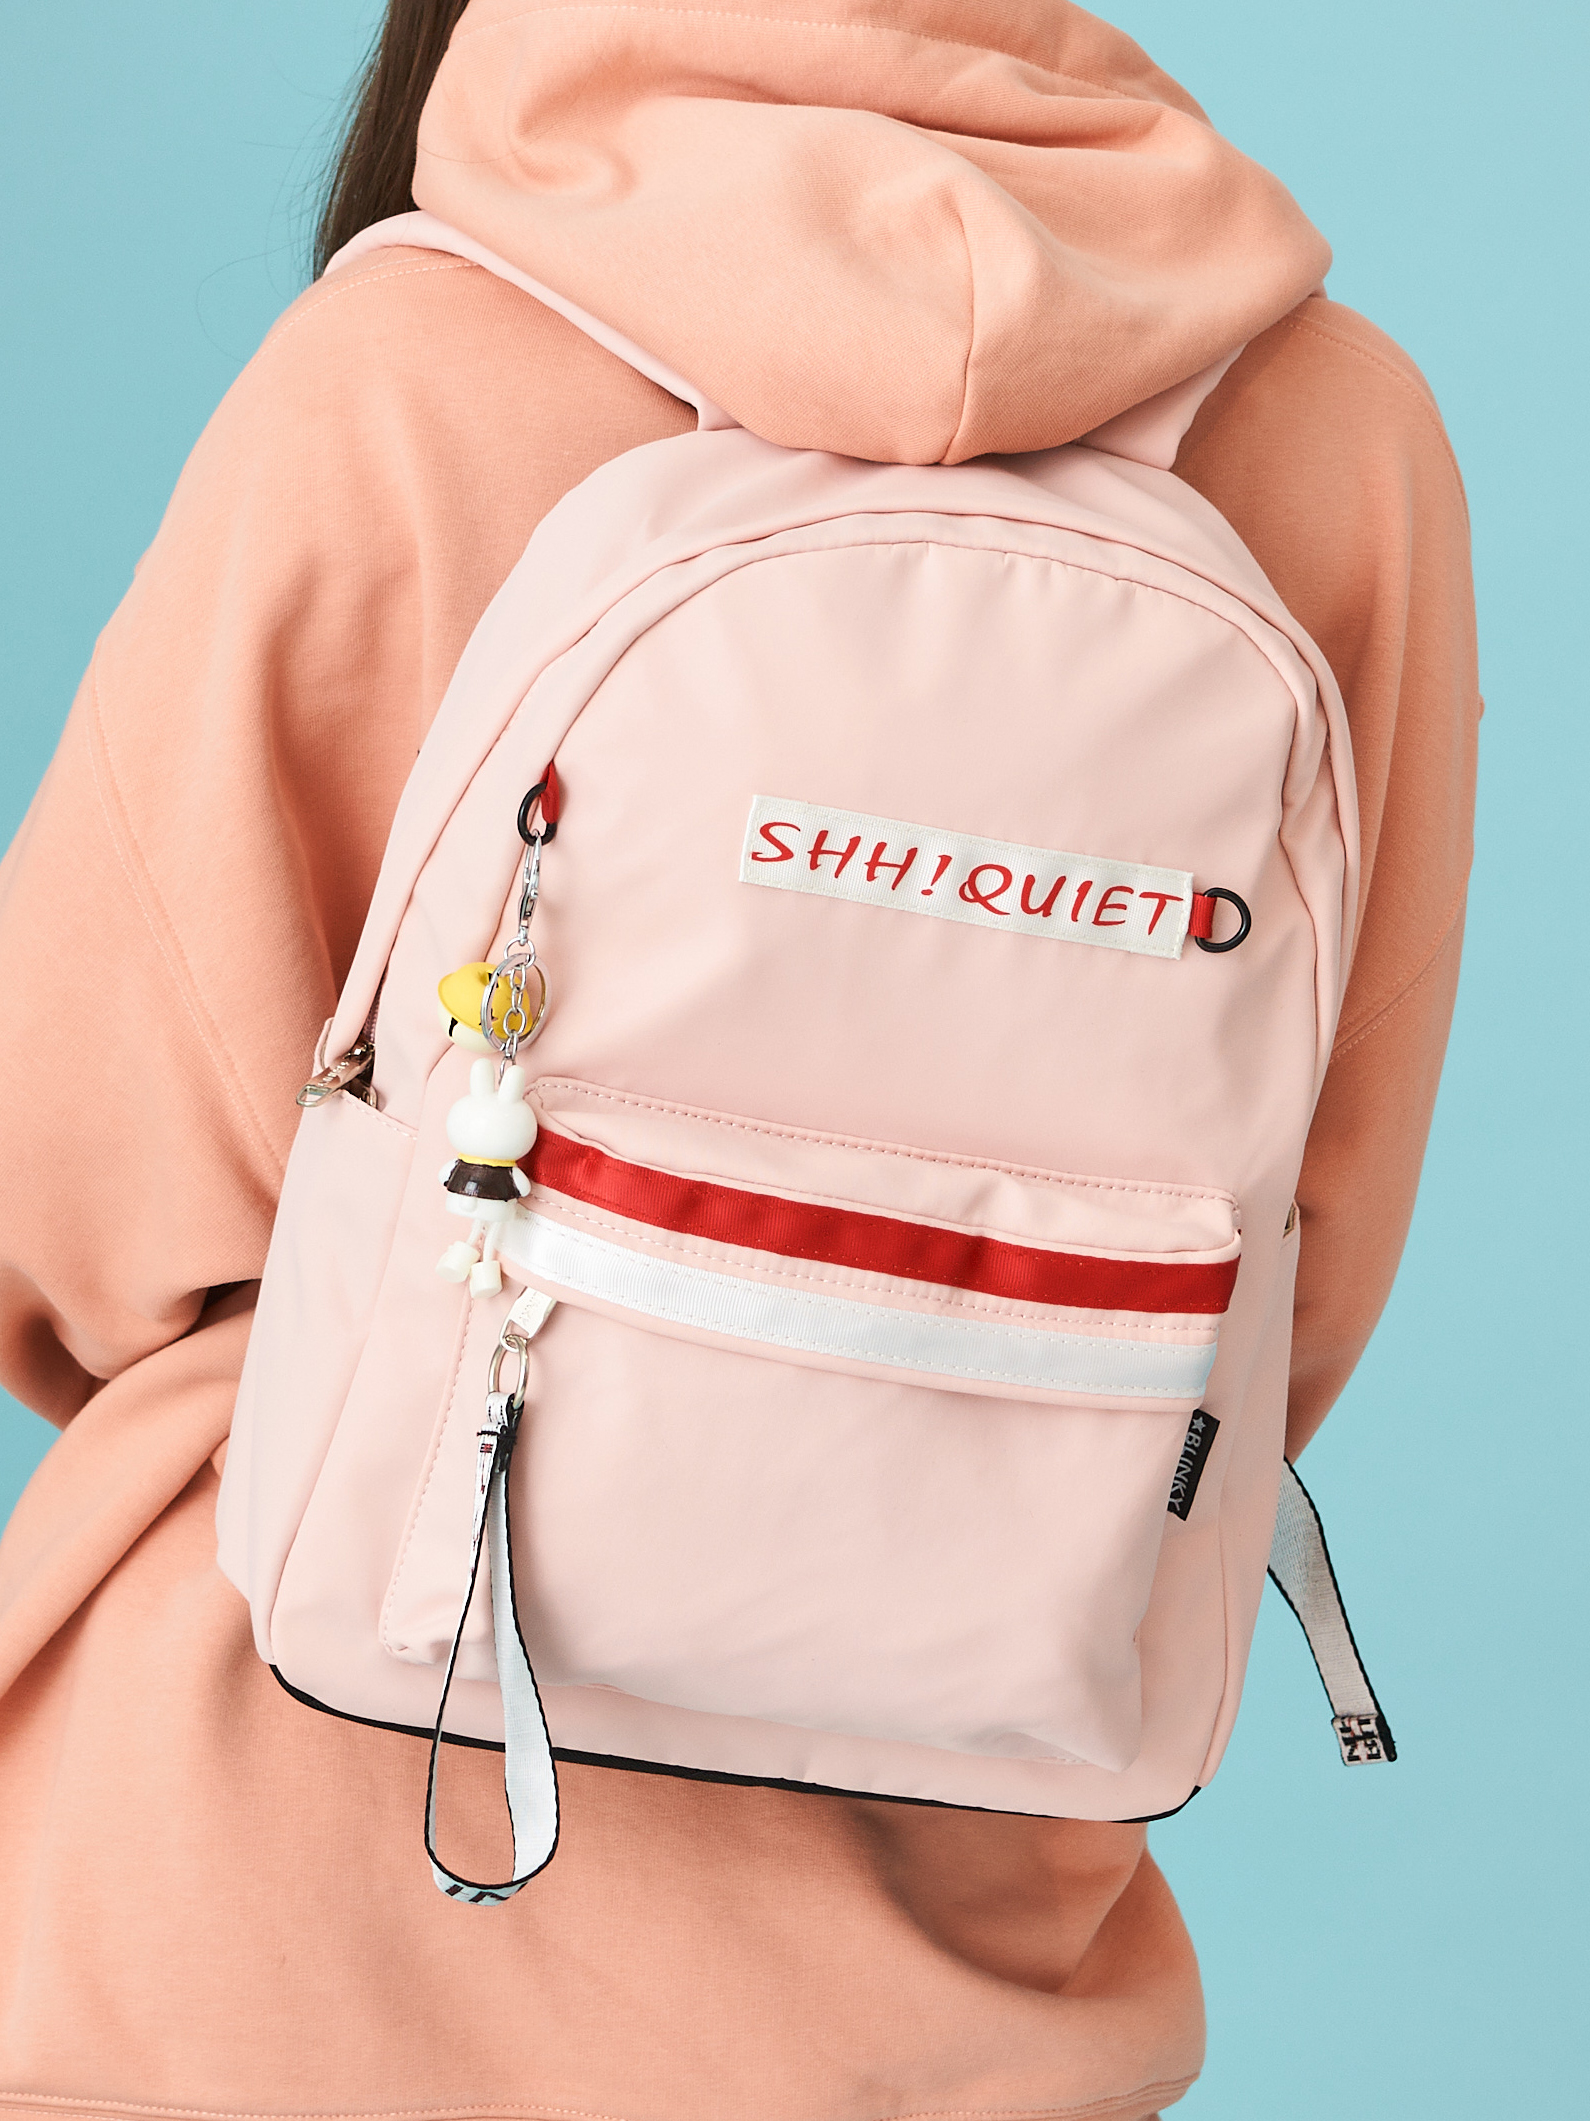 Рюкзак «Shh! Quiet!» pink красно-белый